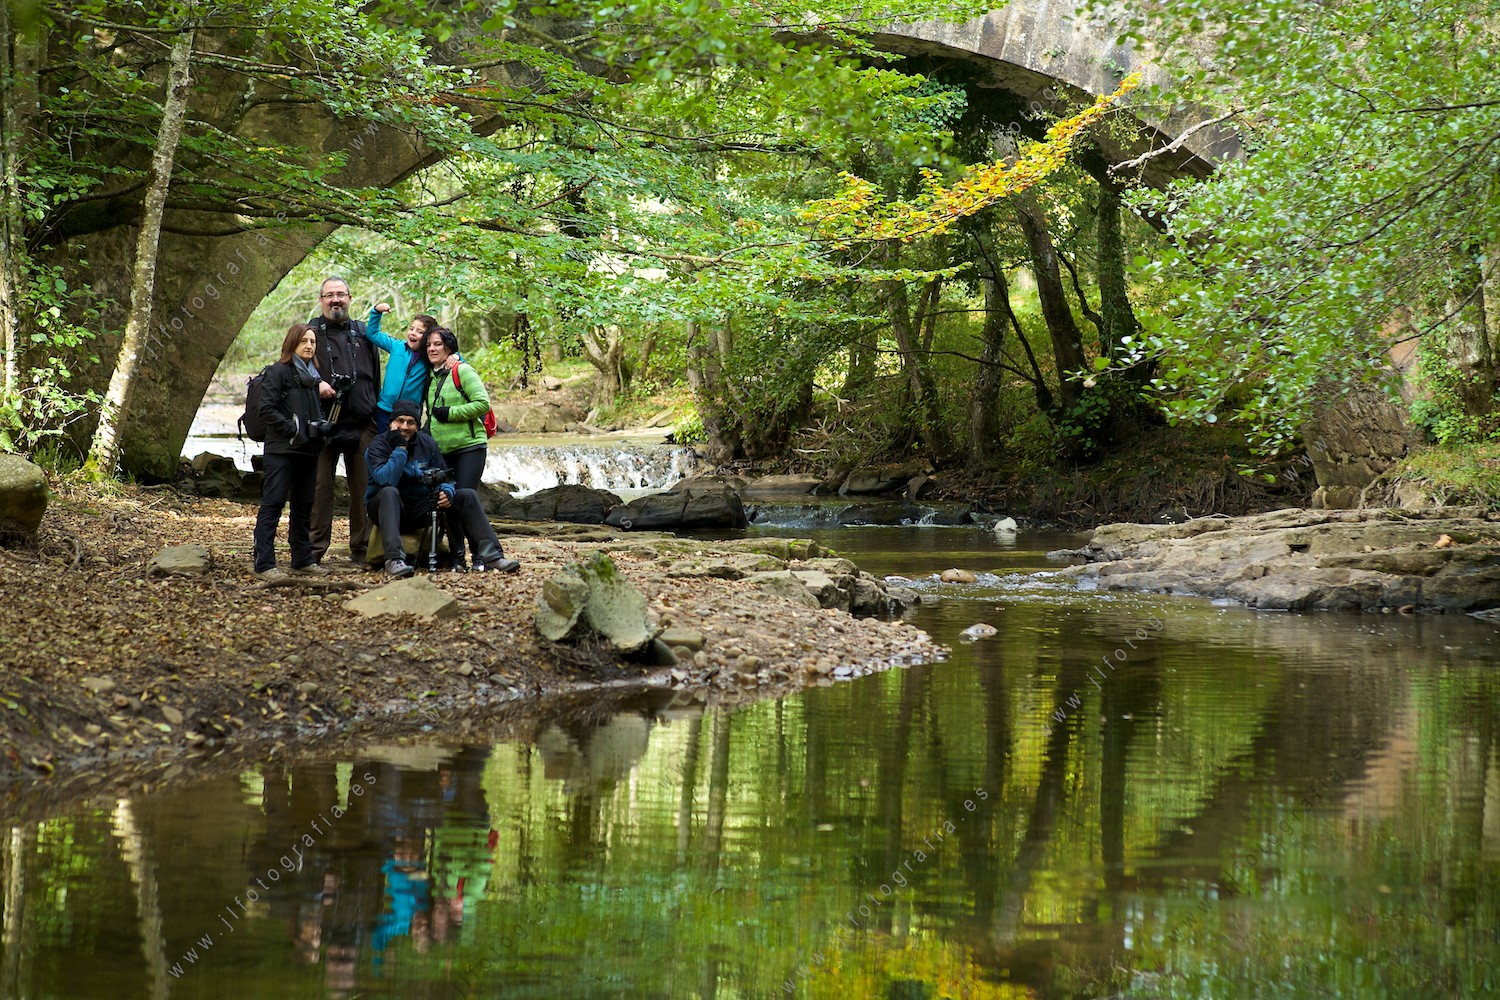 fotógrafos socios de Denbora, posando junto al puente en el río del parque natural del Gorbea en plano general.